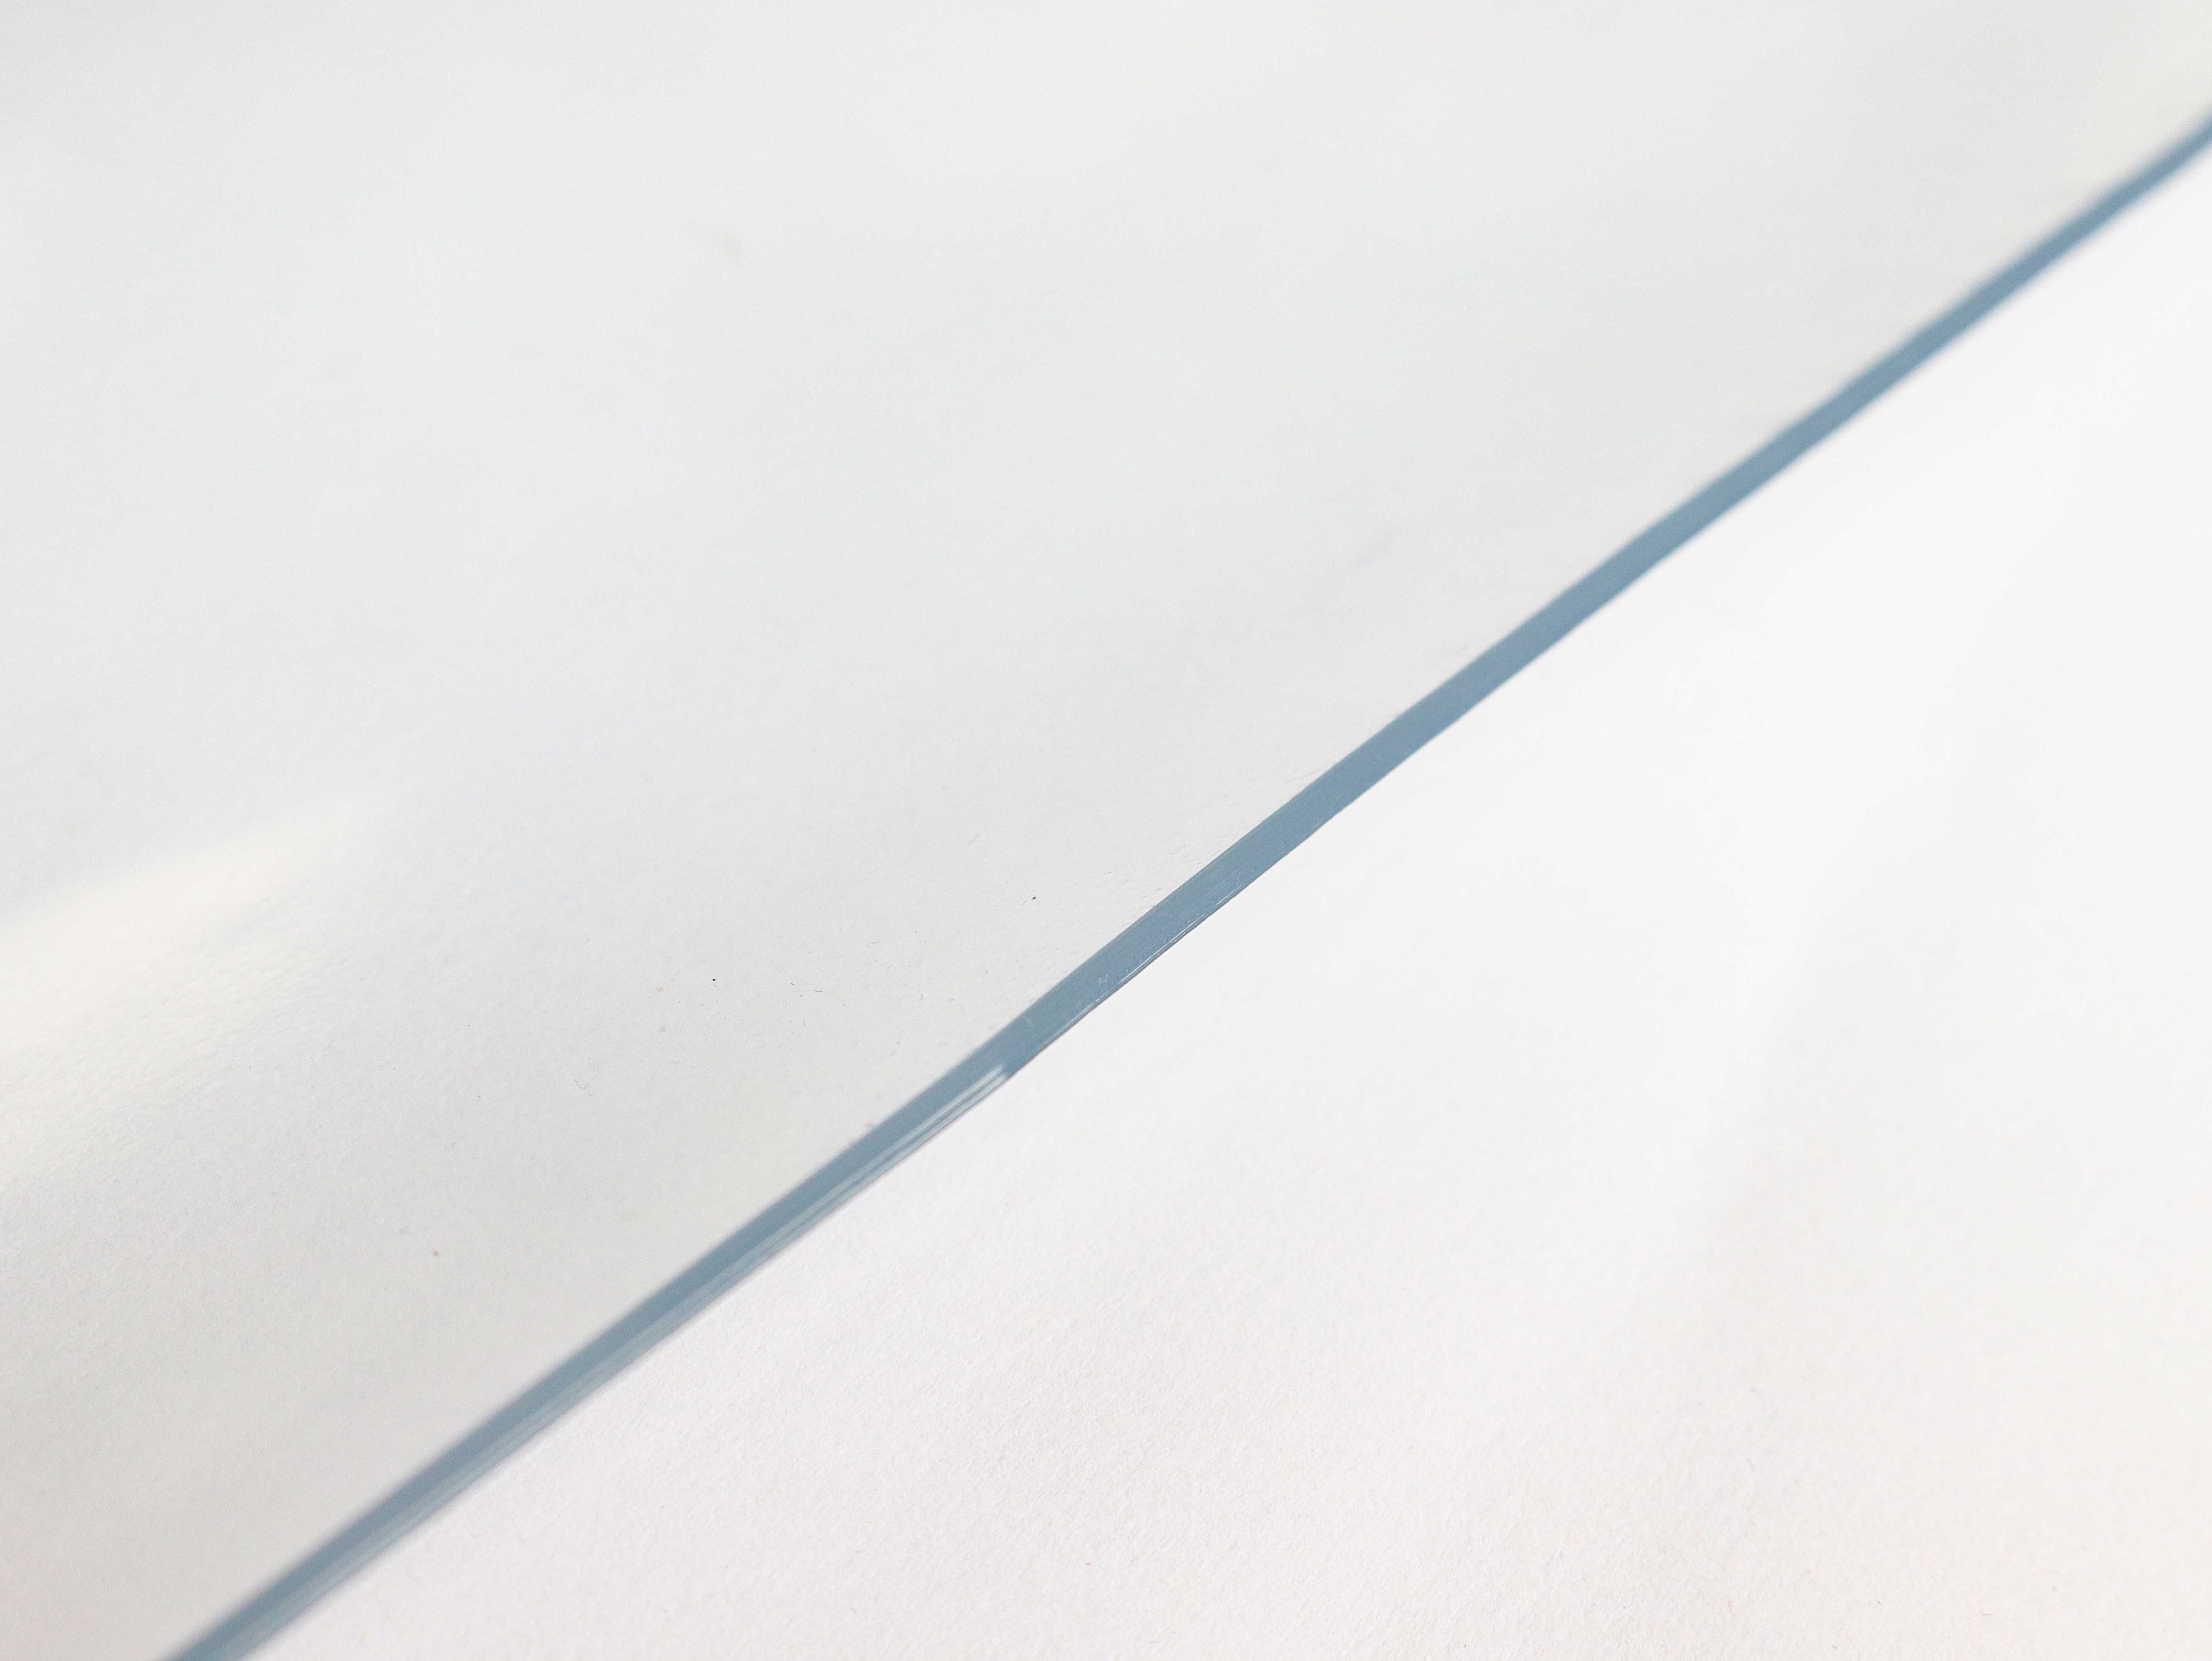 Klarsichtfolie 2mm stark & 1 m breit Transparenter Tischschutz aus 100% PVC